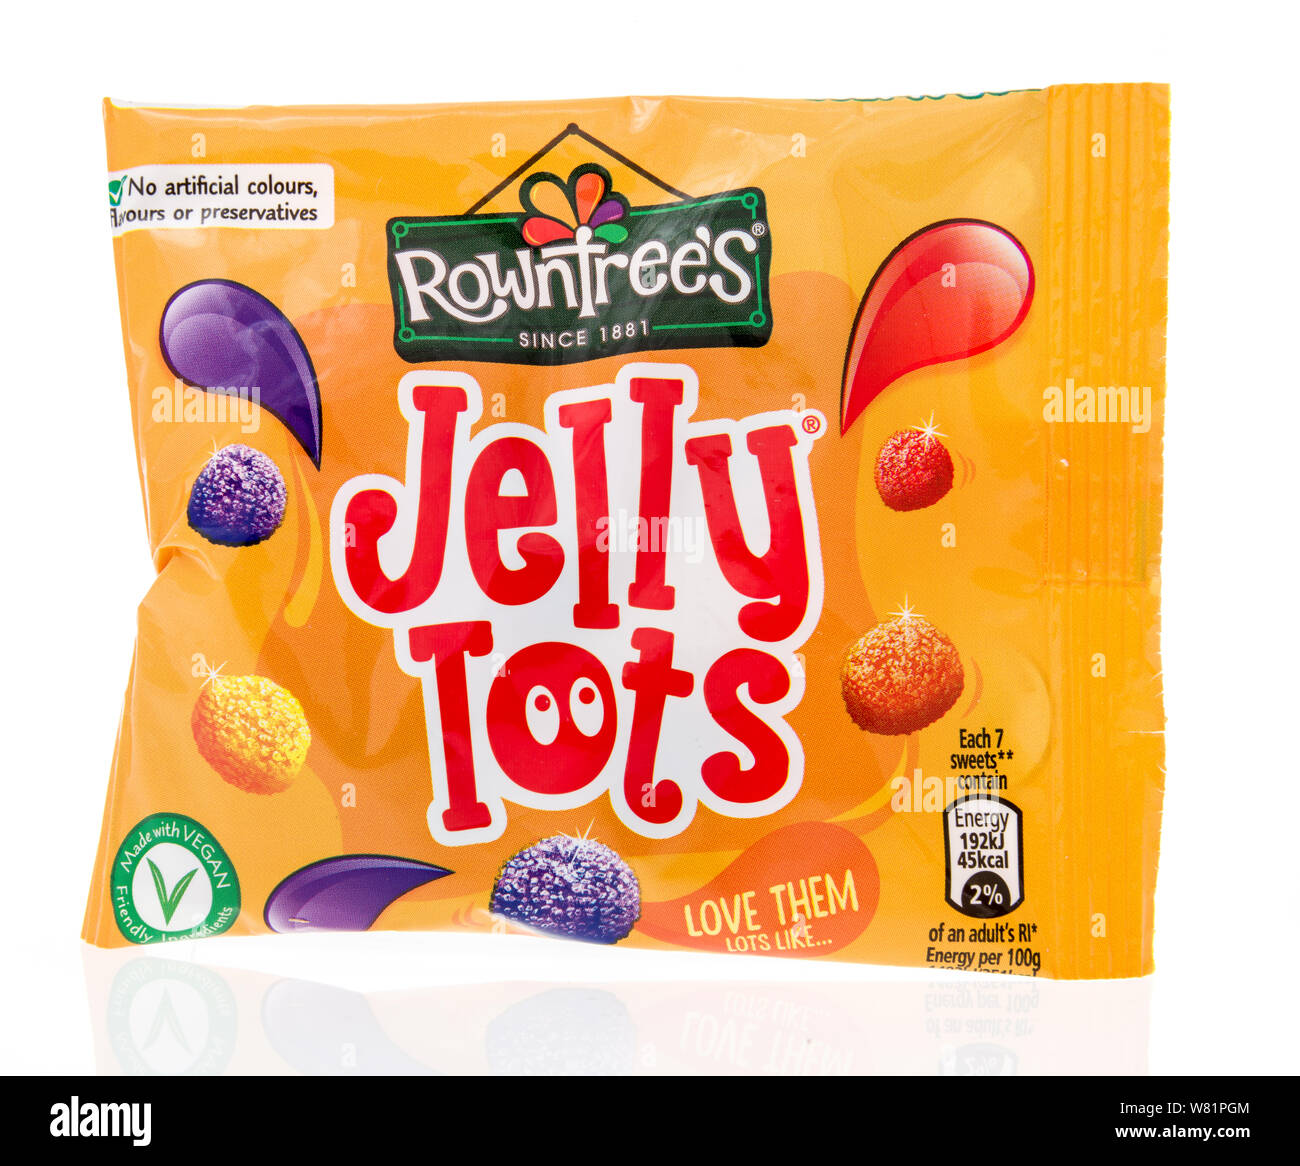 Winneconne, WI - 10 Juli 2019: ein Paket von Towntrees Jelly Tots candy auf einem isolierten Hintergrund Stockfoto